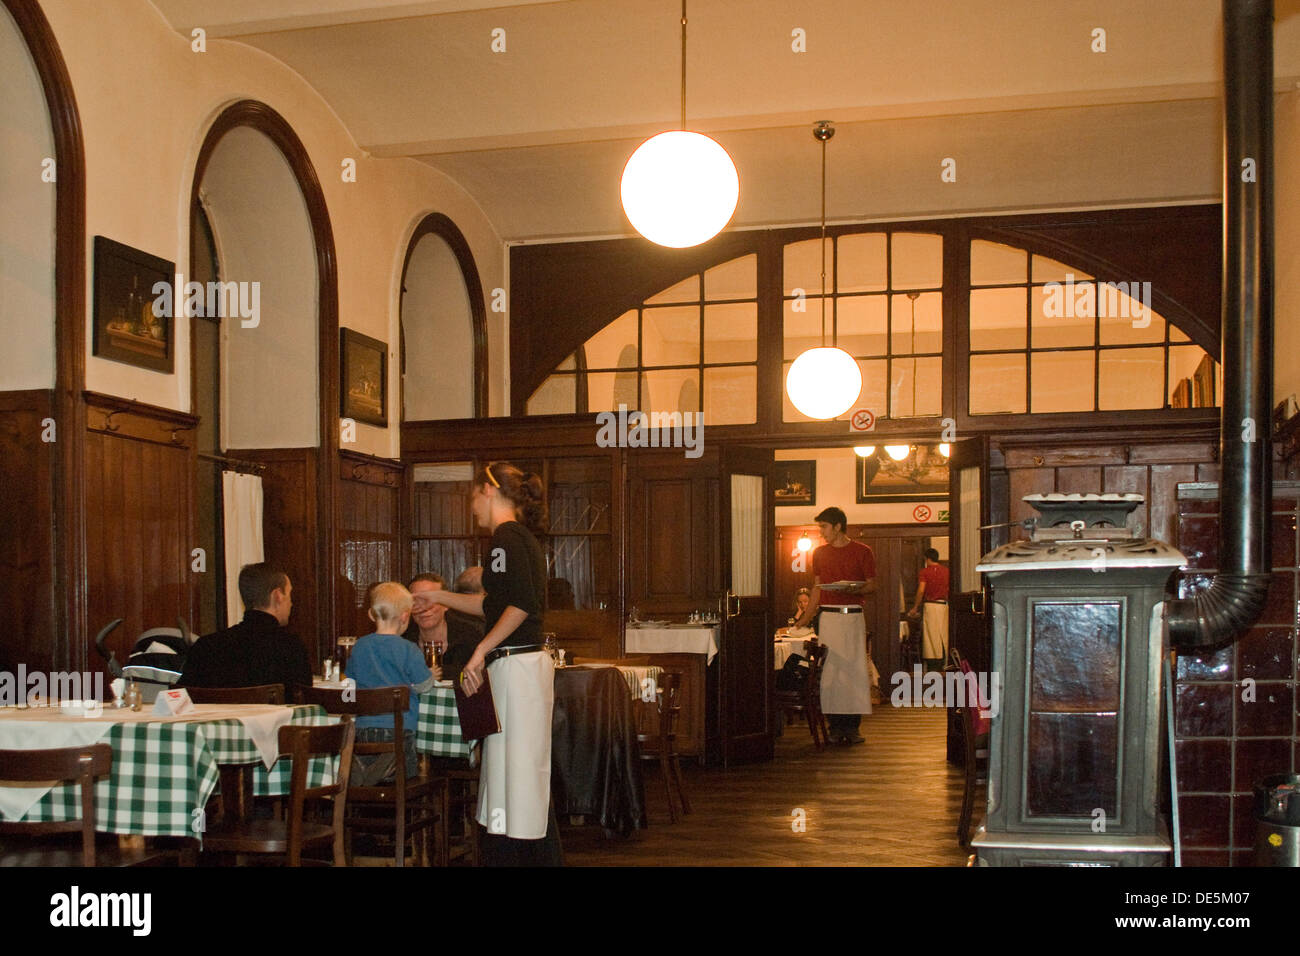 Österreich, Wien 4., Wieden, im historischen Wiener Gasthaus Ubl serviert man gute Wiener Küche in gemütlicher Atmosphäre. Foto Stock